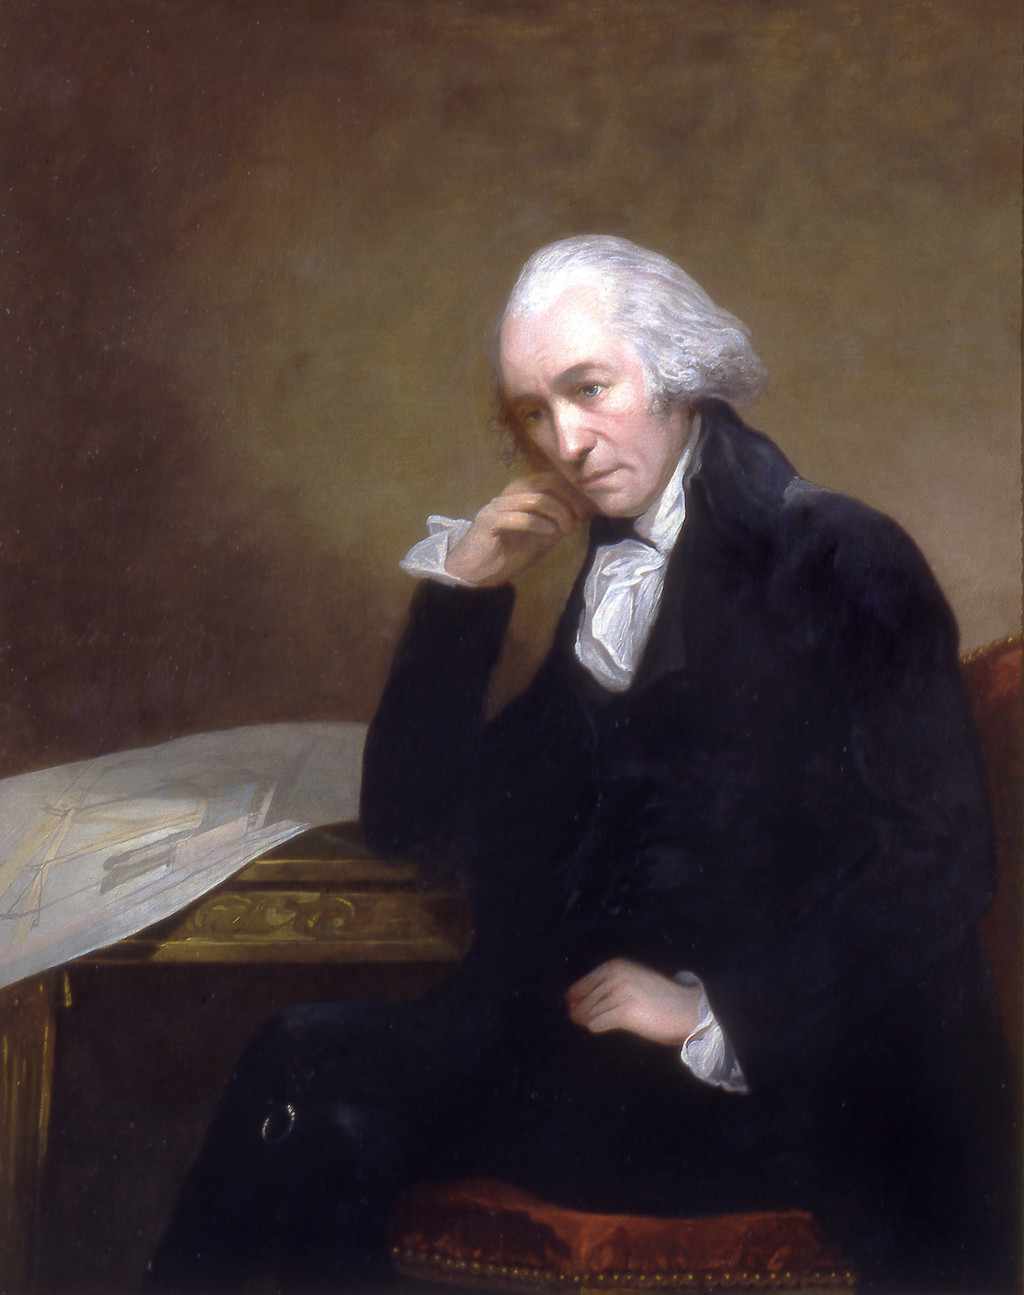 James Watt, schottischer Erfinder, verbessert die Dampfmaschine und bekommt 1769 das Patent für den separaten Kondensator.